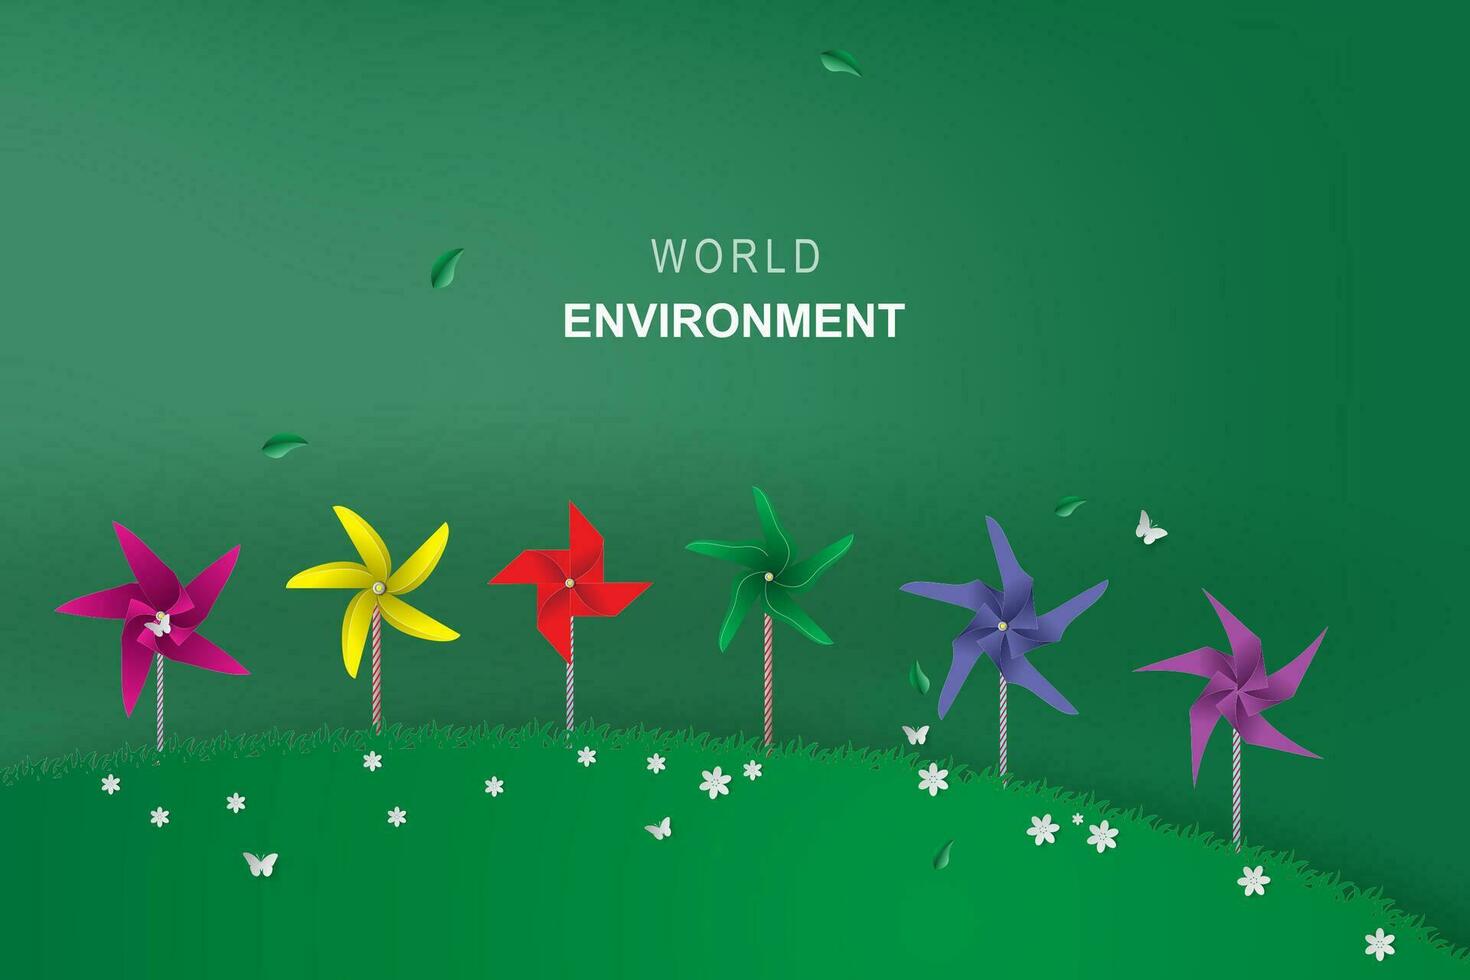 origami tillverkad av färgrik vind turbin i park.go grön ekologi miljö begrepp för tapeter, landning sida, bok cover.creative papper konst och hantverk stil.minimal modern grön.vektor illustration. vektor